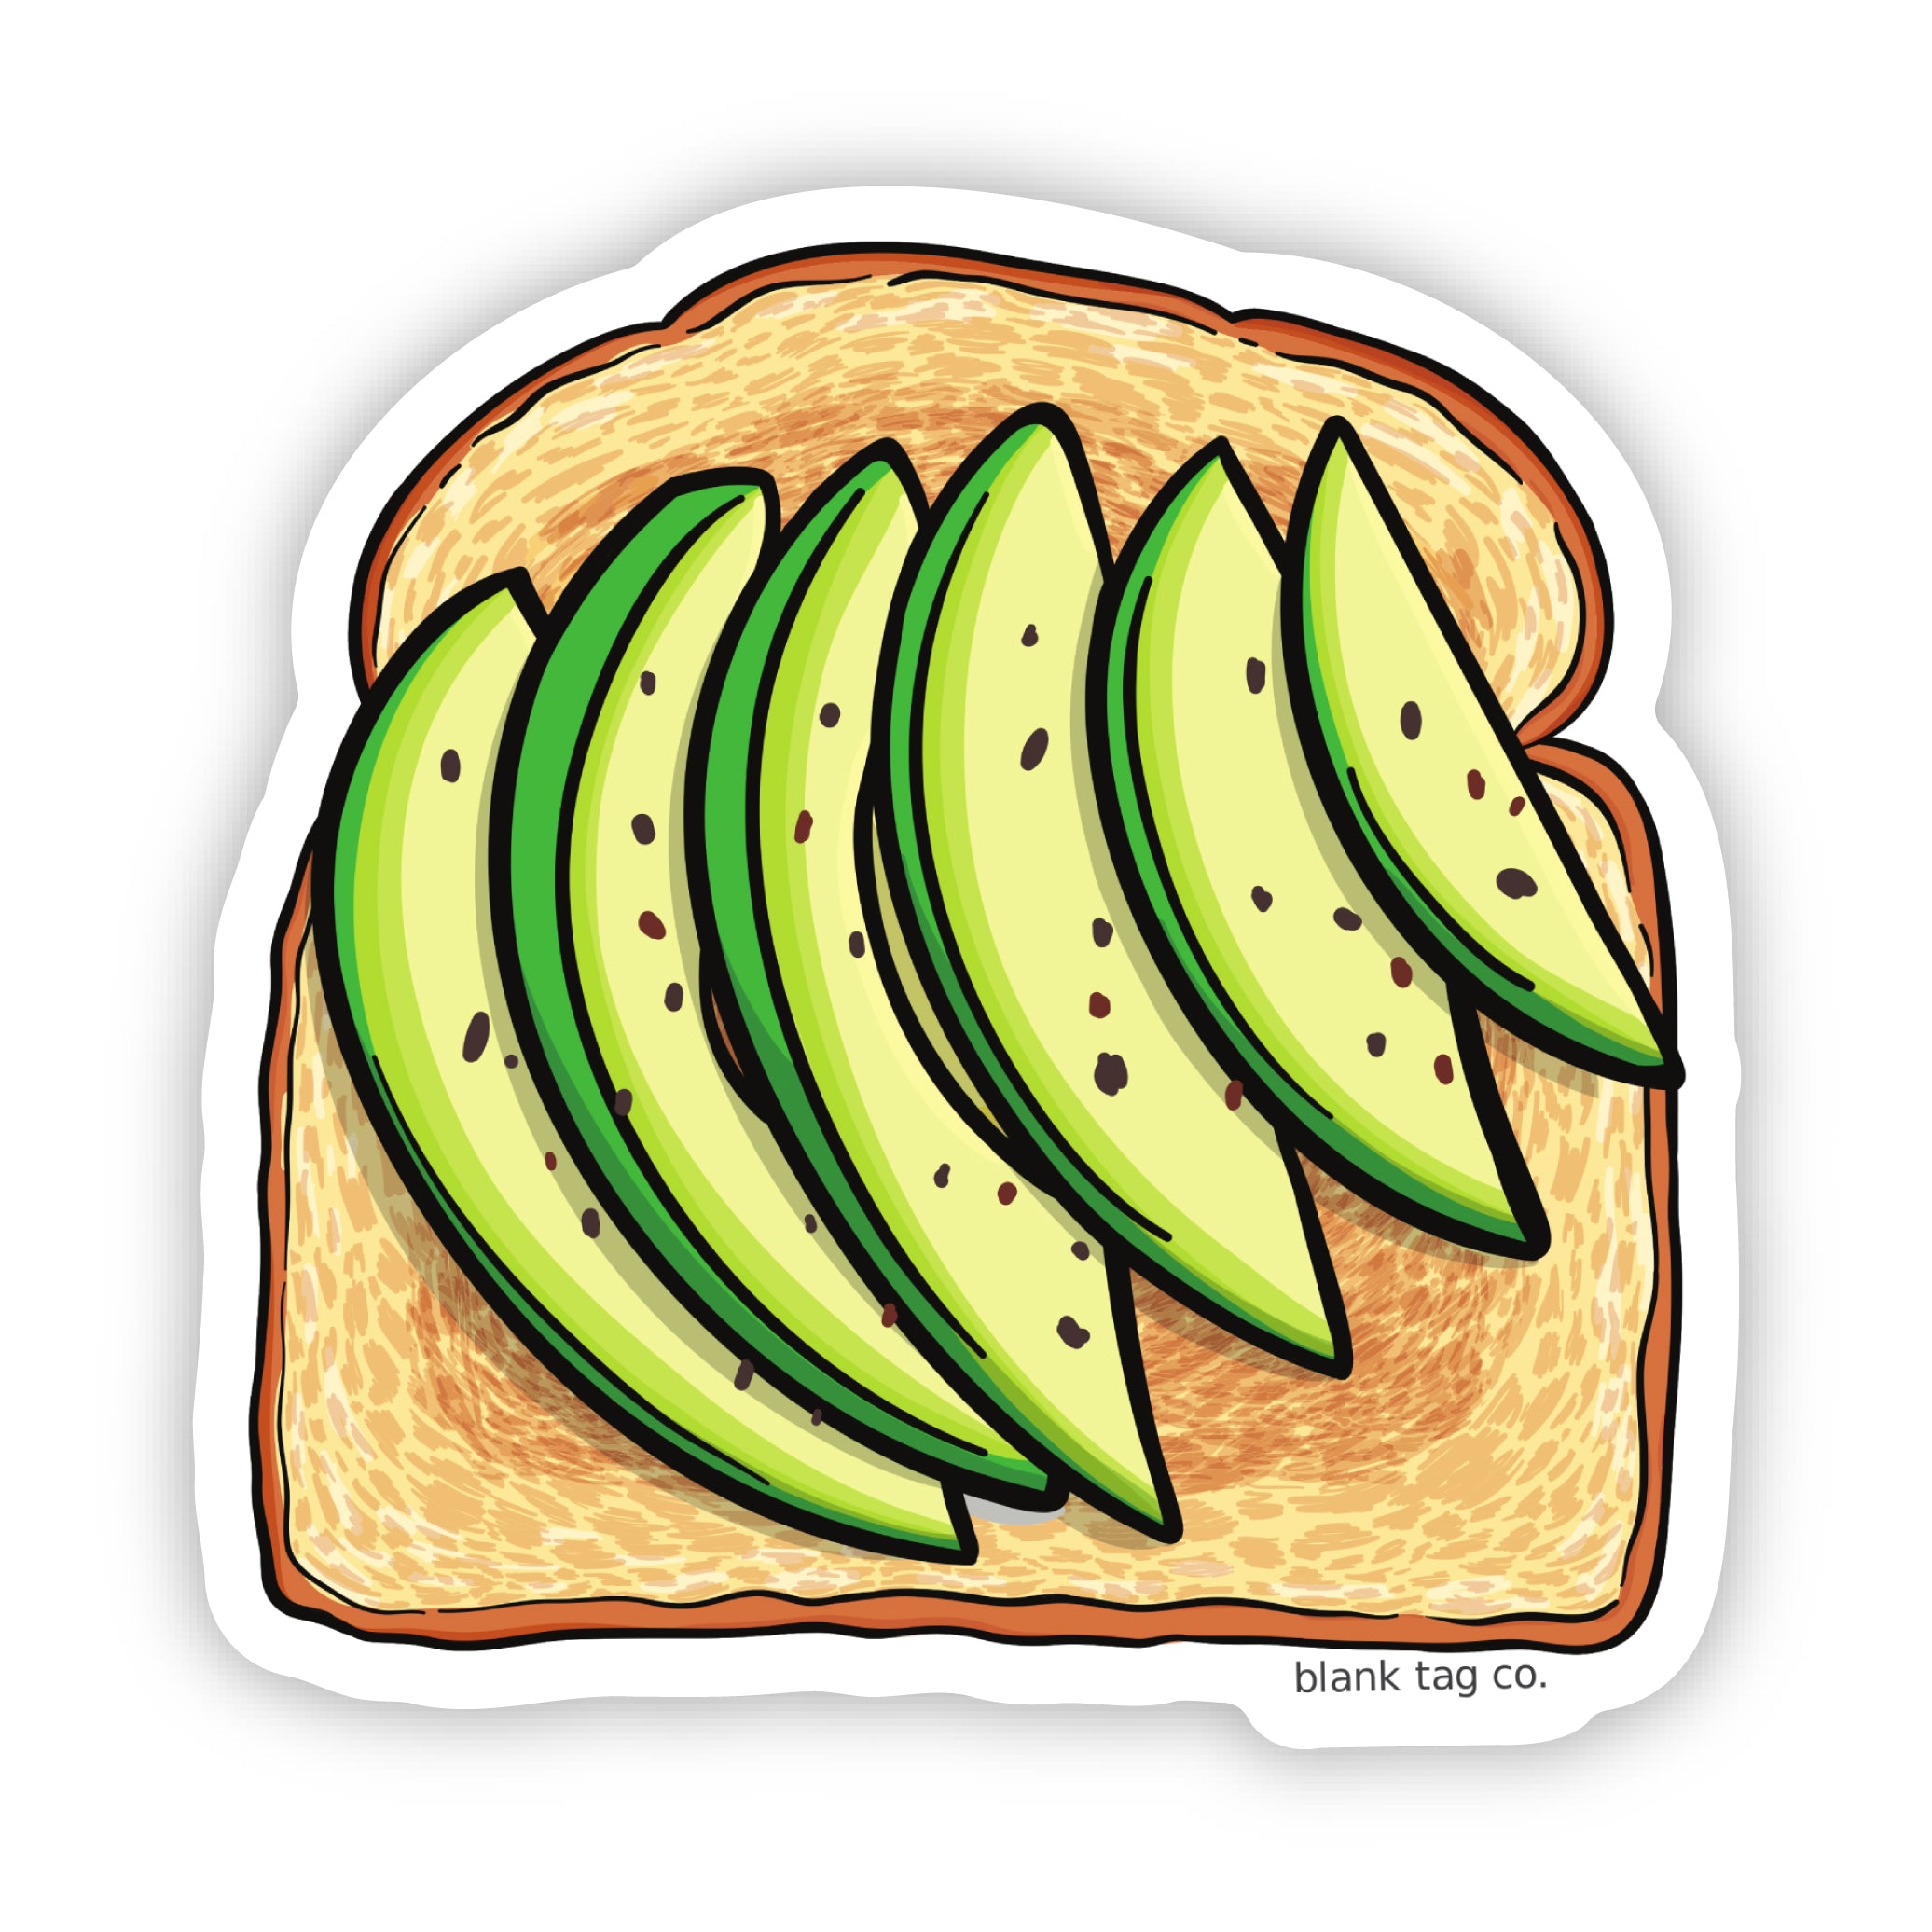 The Sliced Avocado Toast Sticker